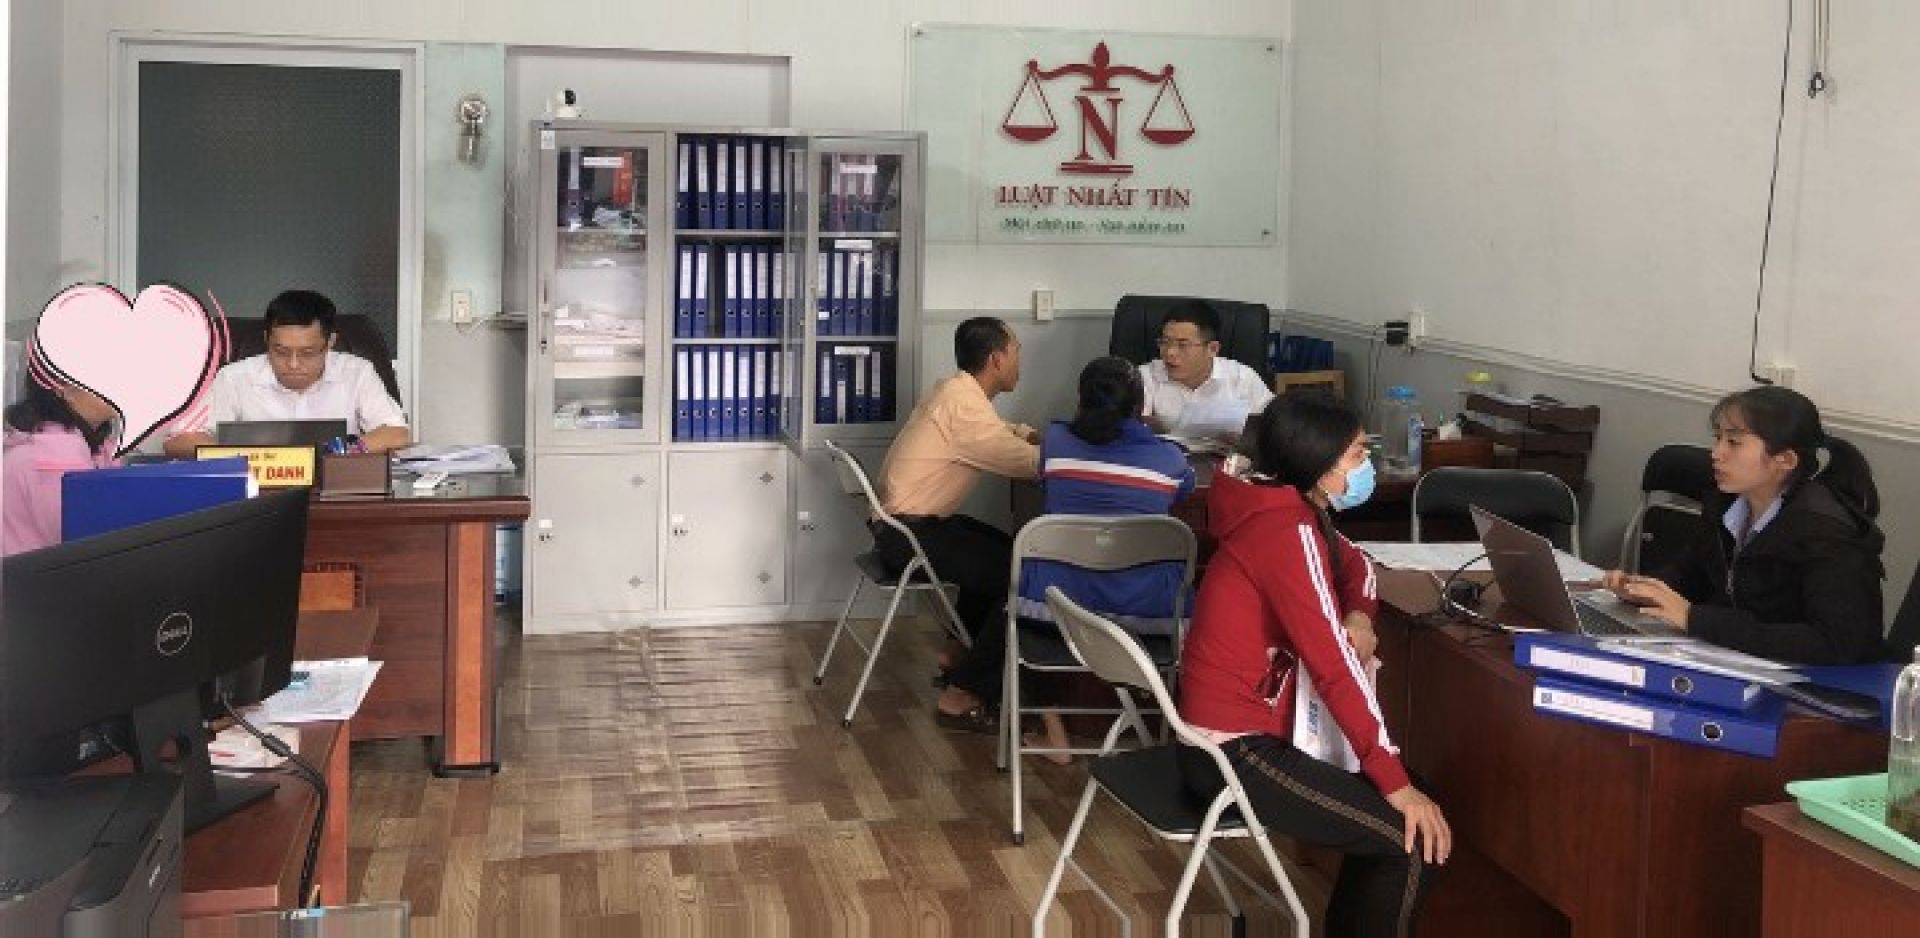 Dịch vụ luật sư ly hôn thuận tình và đơn phương nhanh tại Long Khánh Đồng Nai